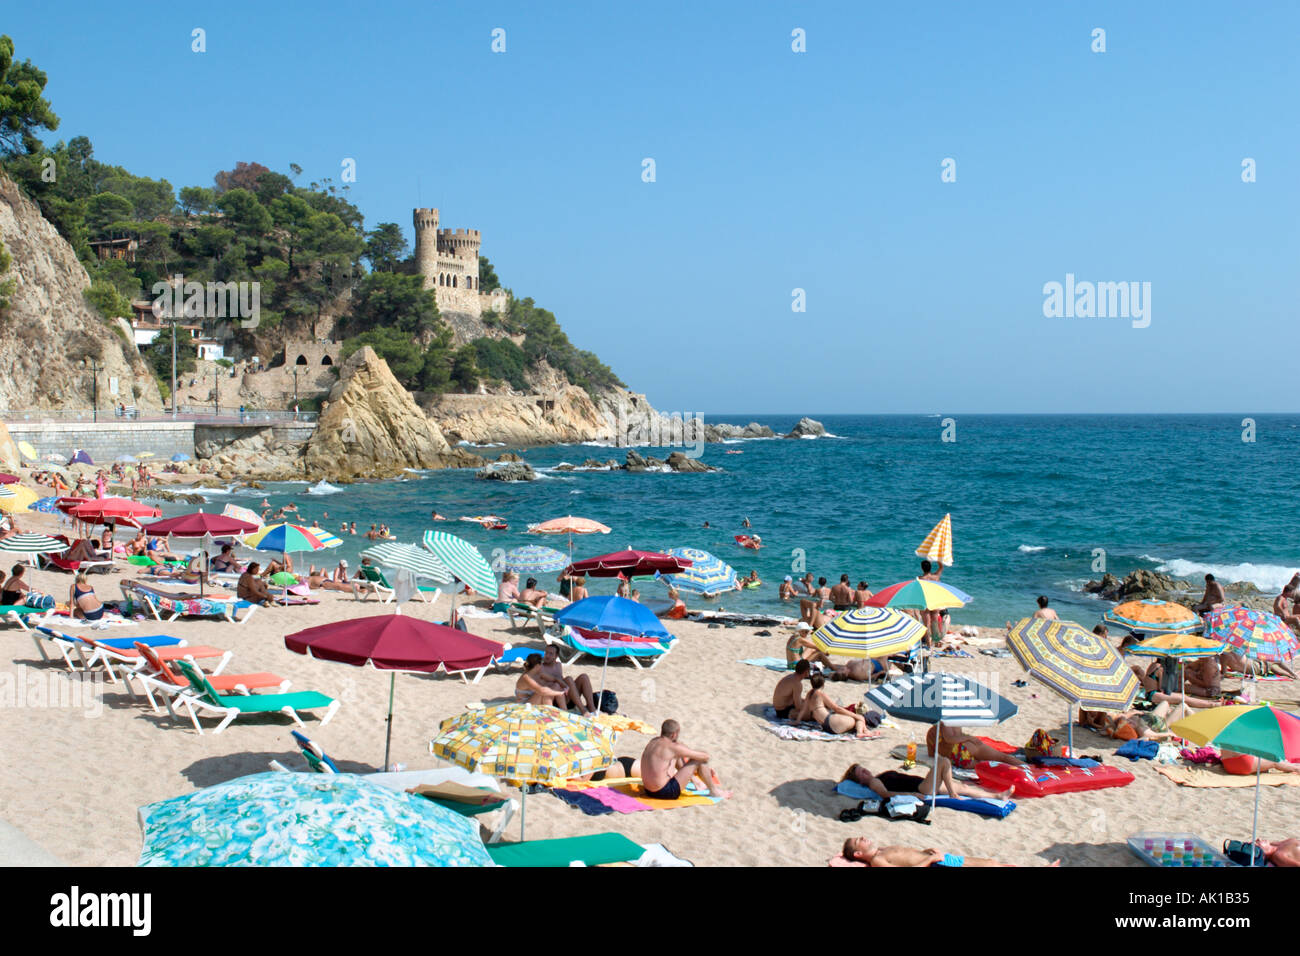 Spiaggia principale con il castello in background, Lloret de Mar, Costa Brava, Catalunya, Spagna Foto Stock